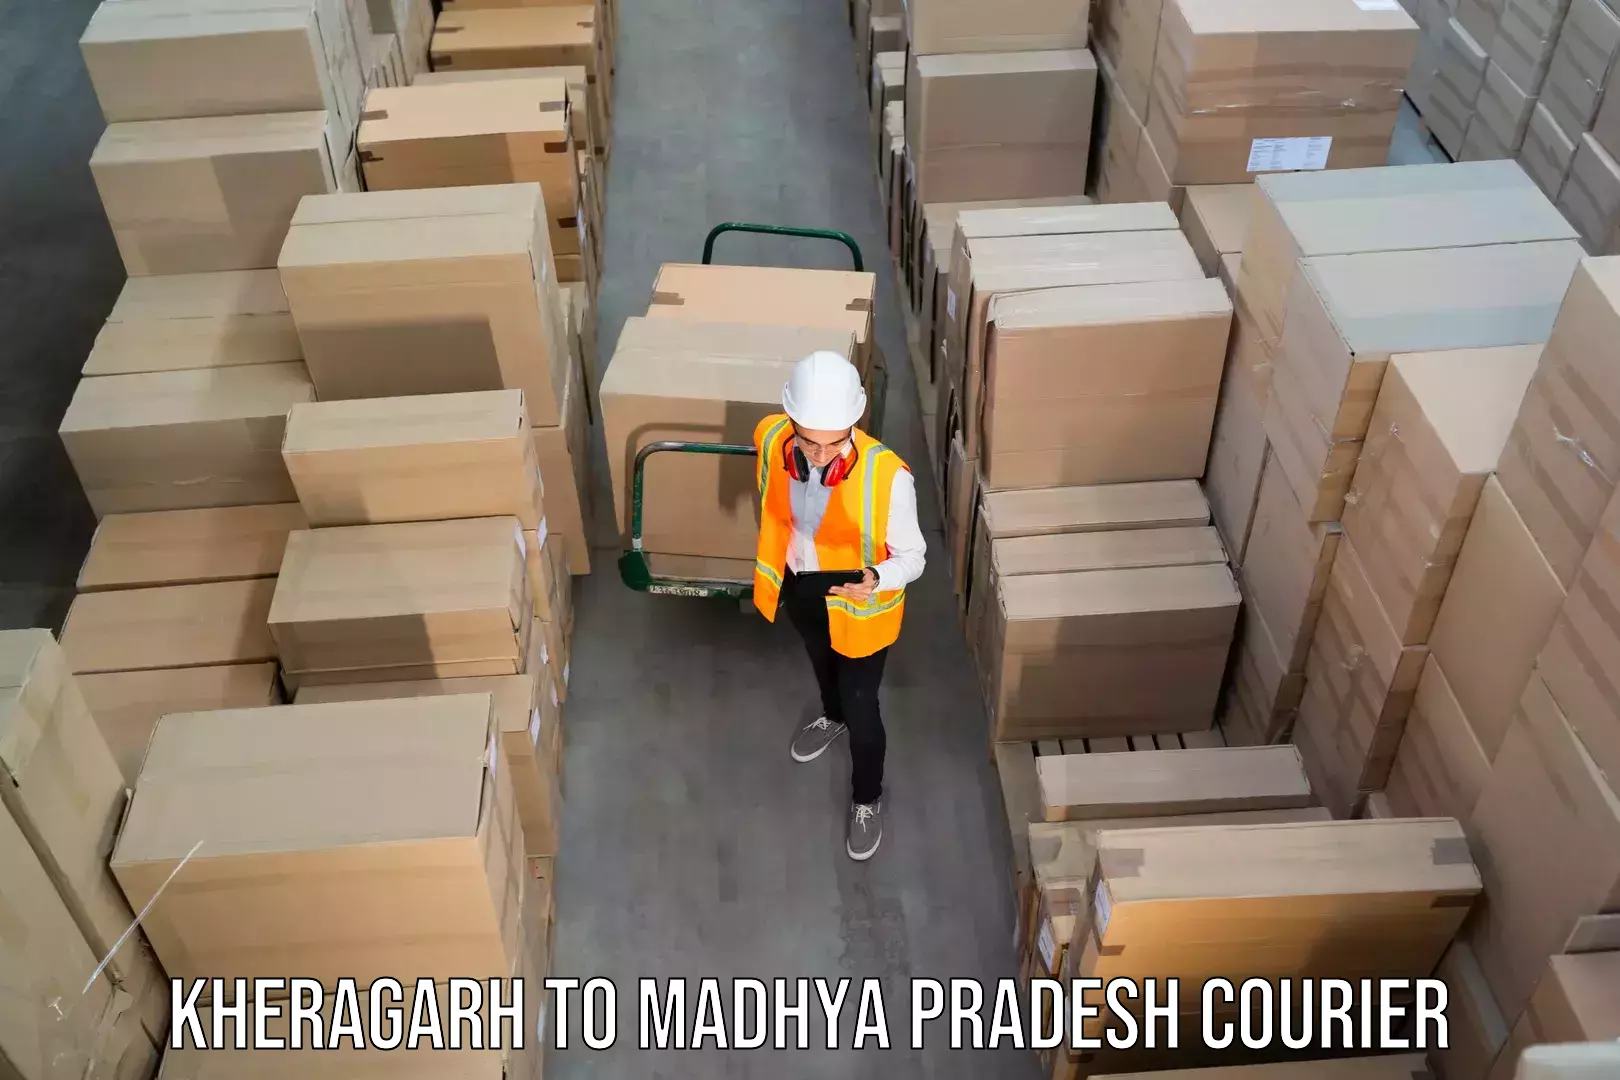 Express mail solutions Kheragarh to Madhya Pradesh